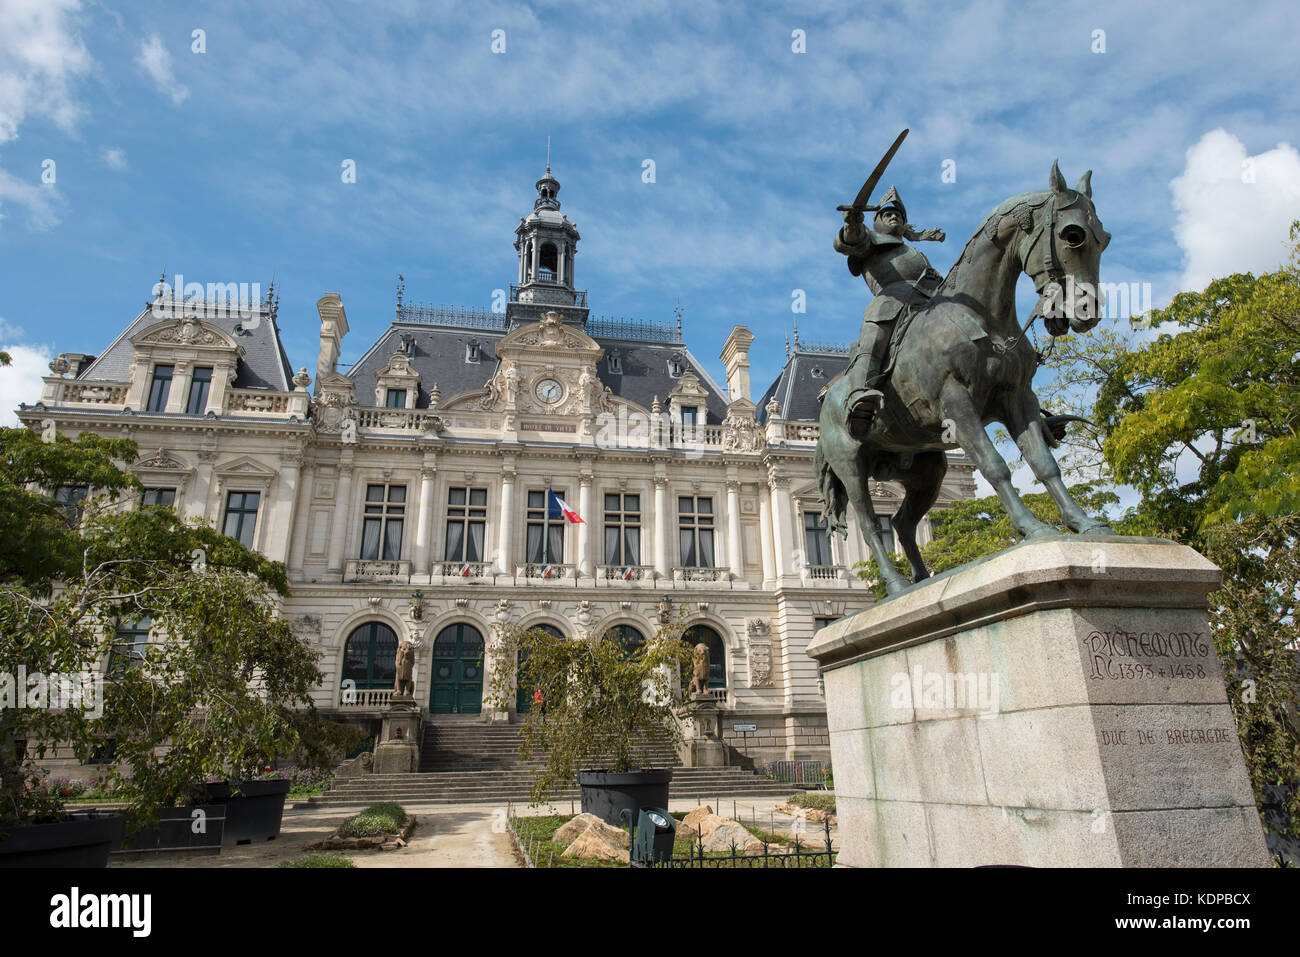 Statua del Duc de Bretagne Arthur de Richemont fuori dall'Hotel de Ville Municipio Vannes, Brittany, Francia. Foto Stock